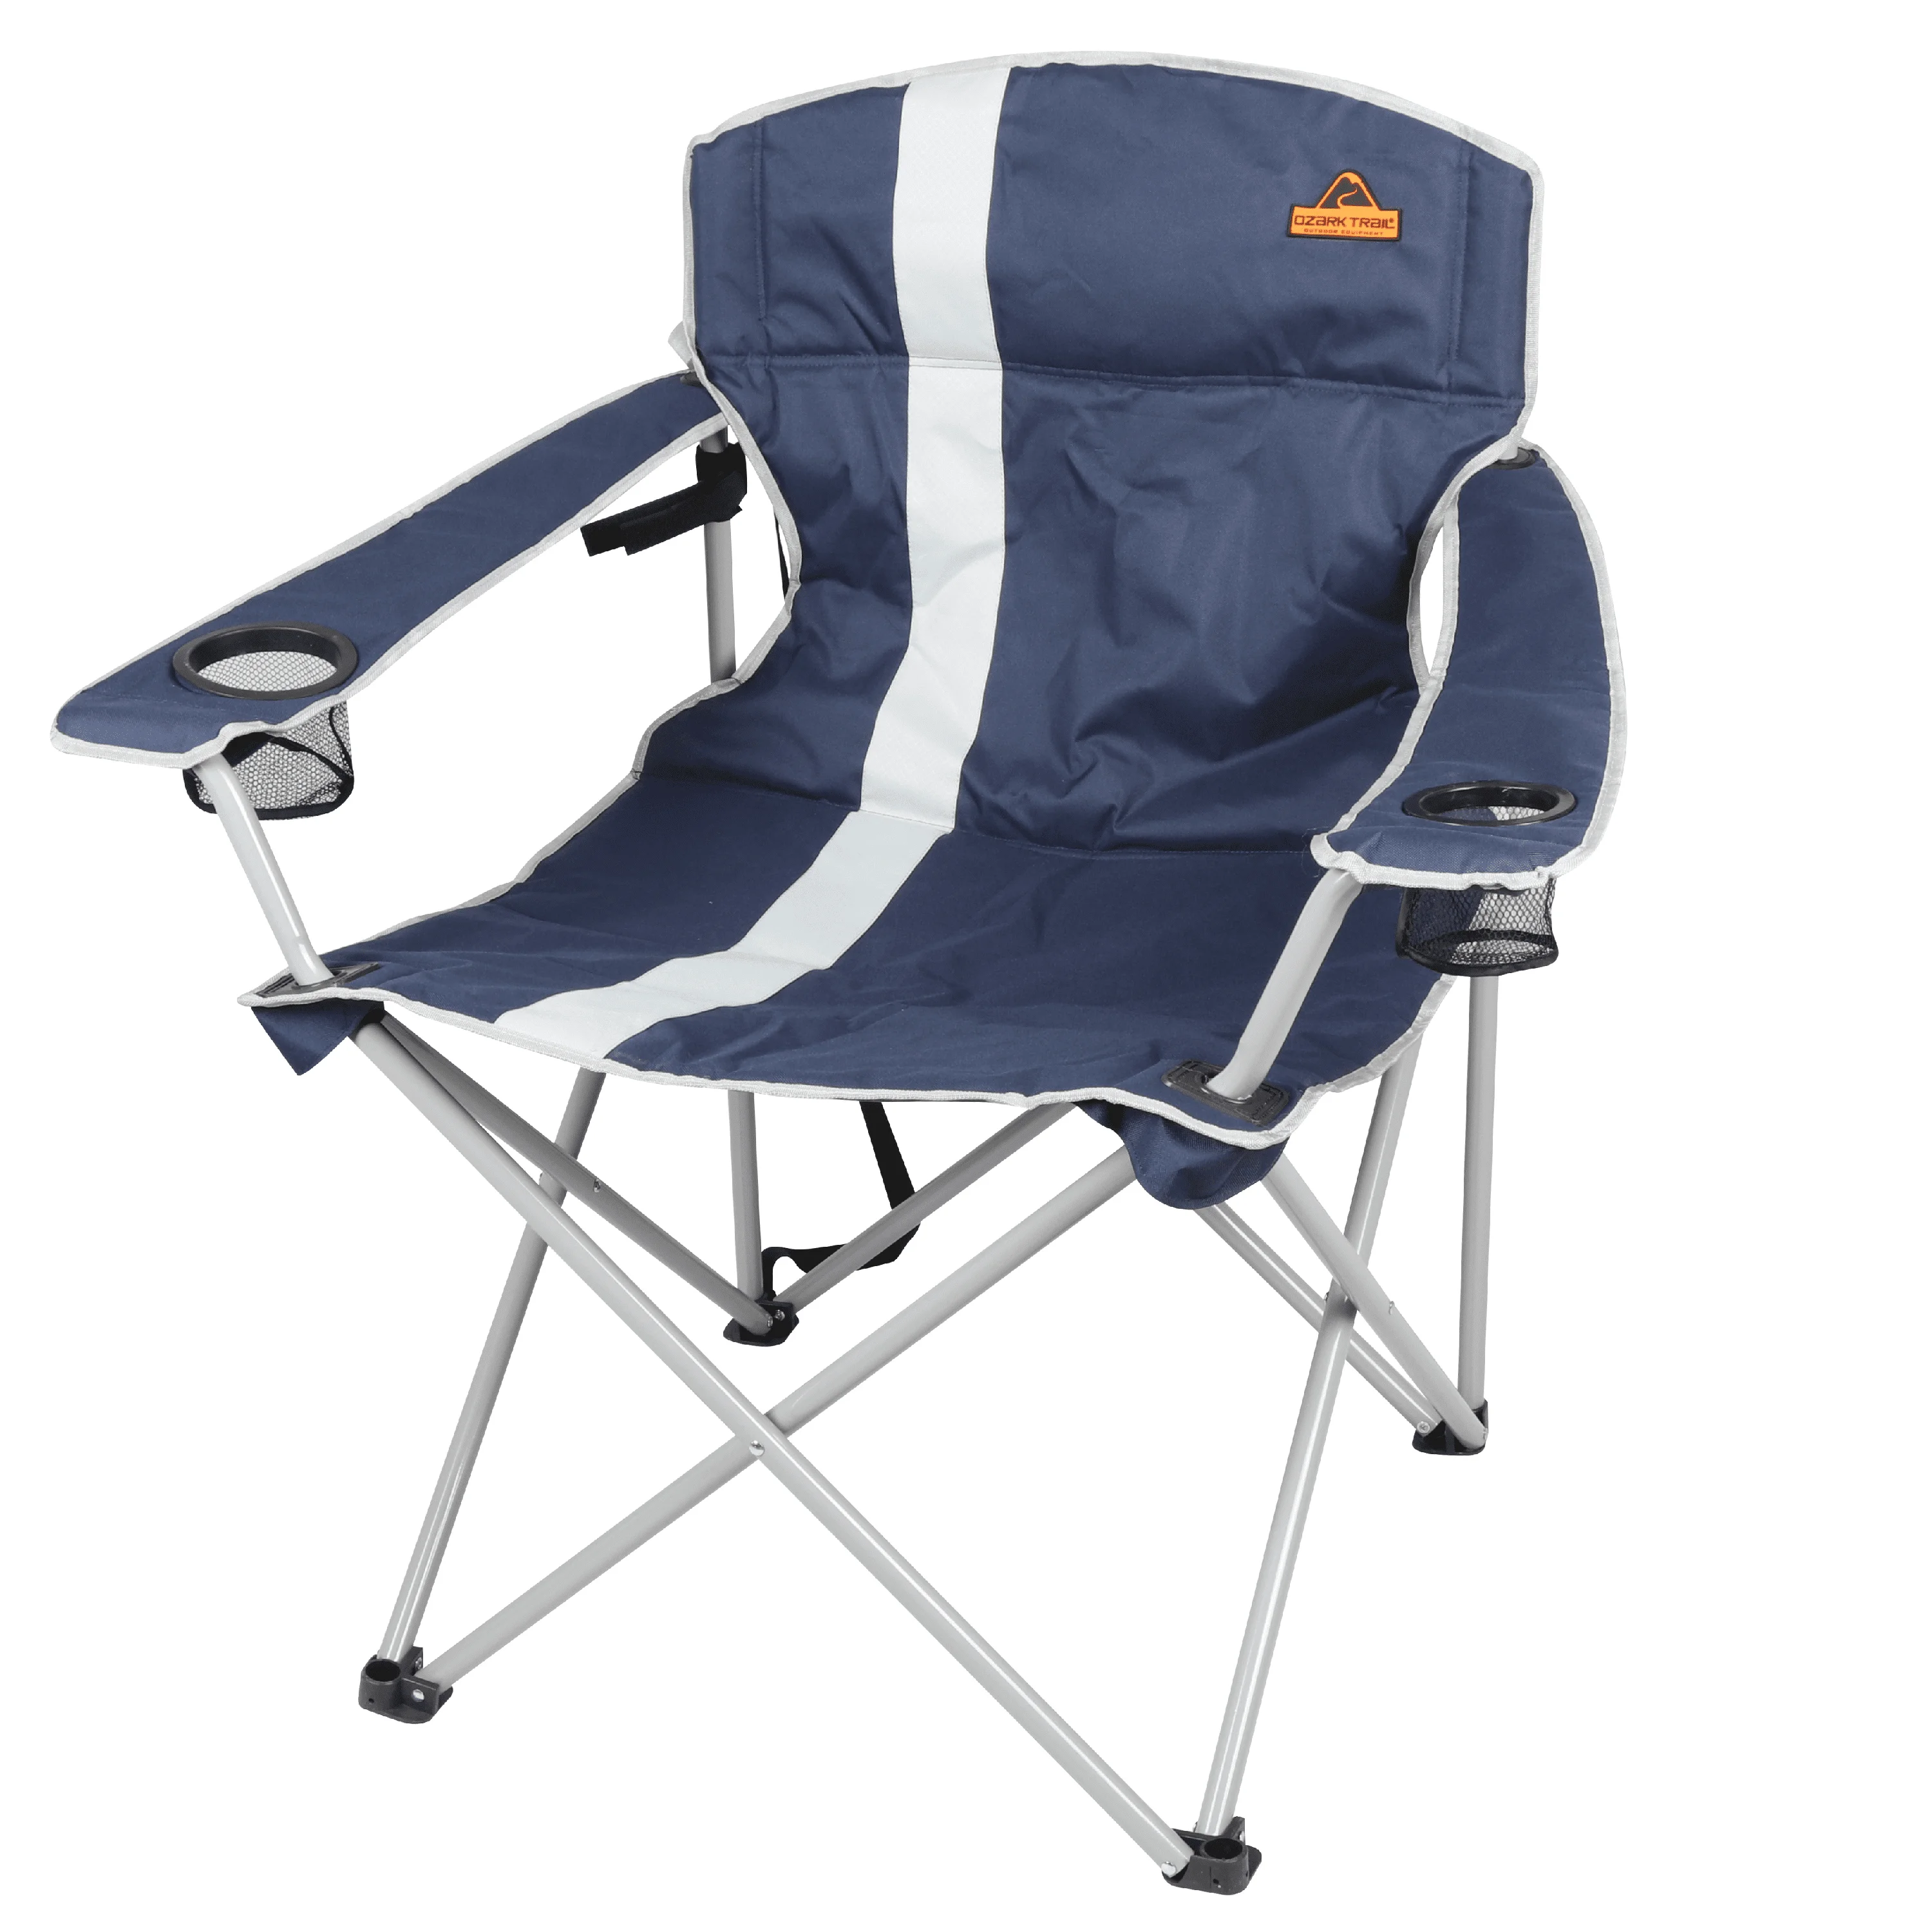 גדול וגבוה הכיסא עם מחזיקי גביע, כחול חוצות כיסאות קמפינג כיסא מתקפל ריהוט גן